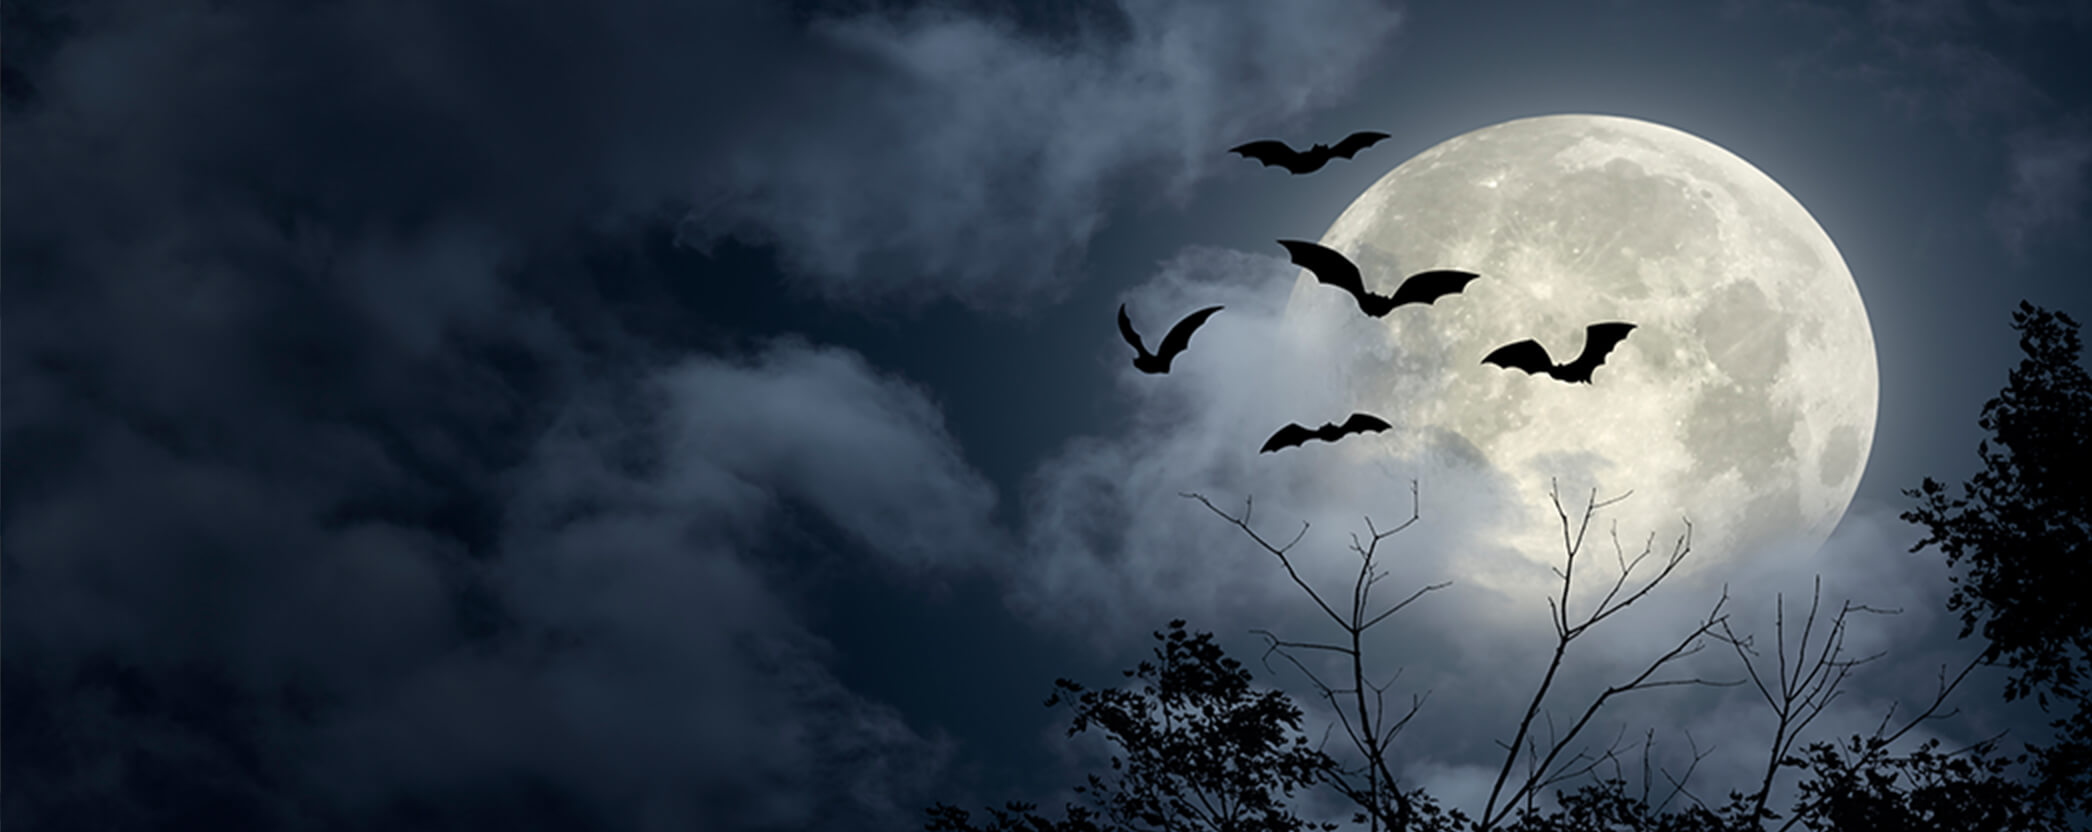 spooky bats flying across the moon